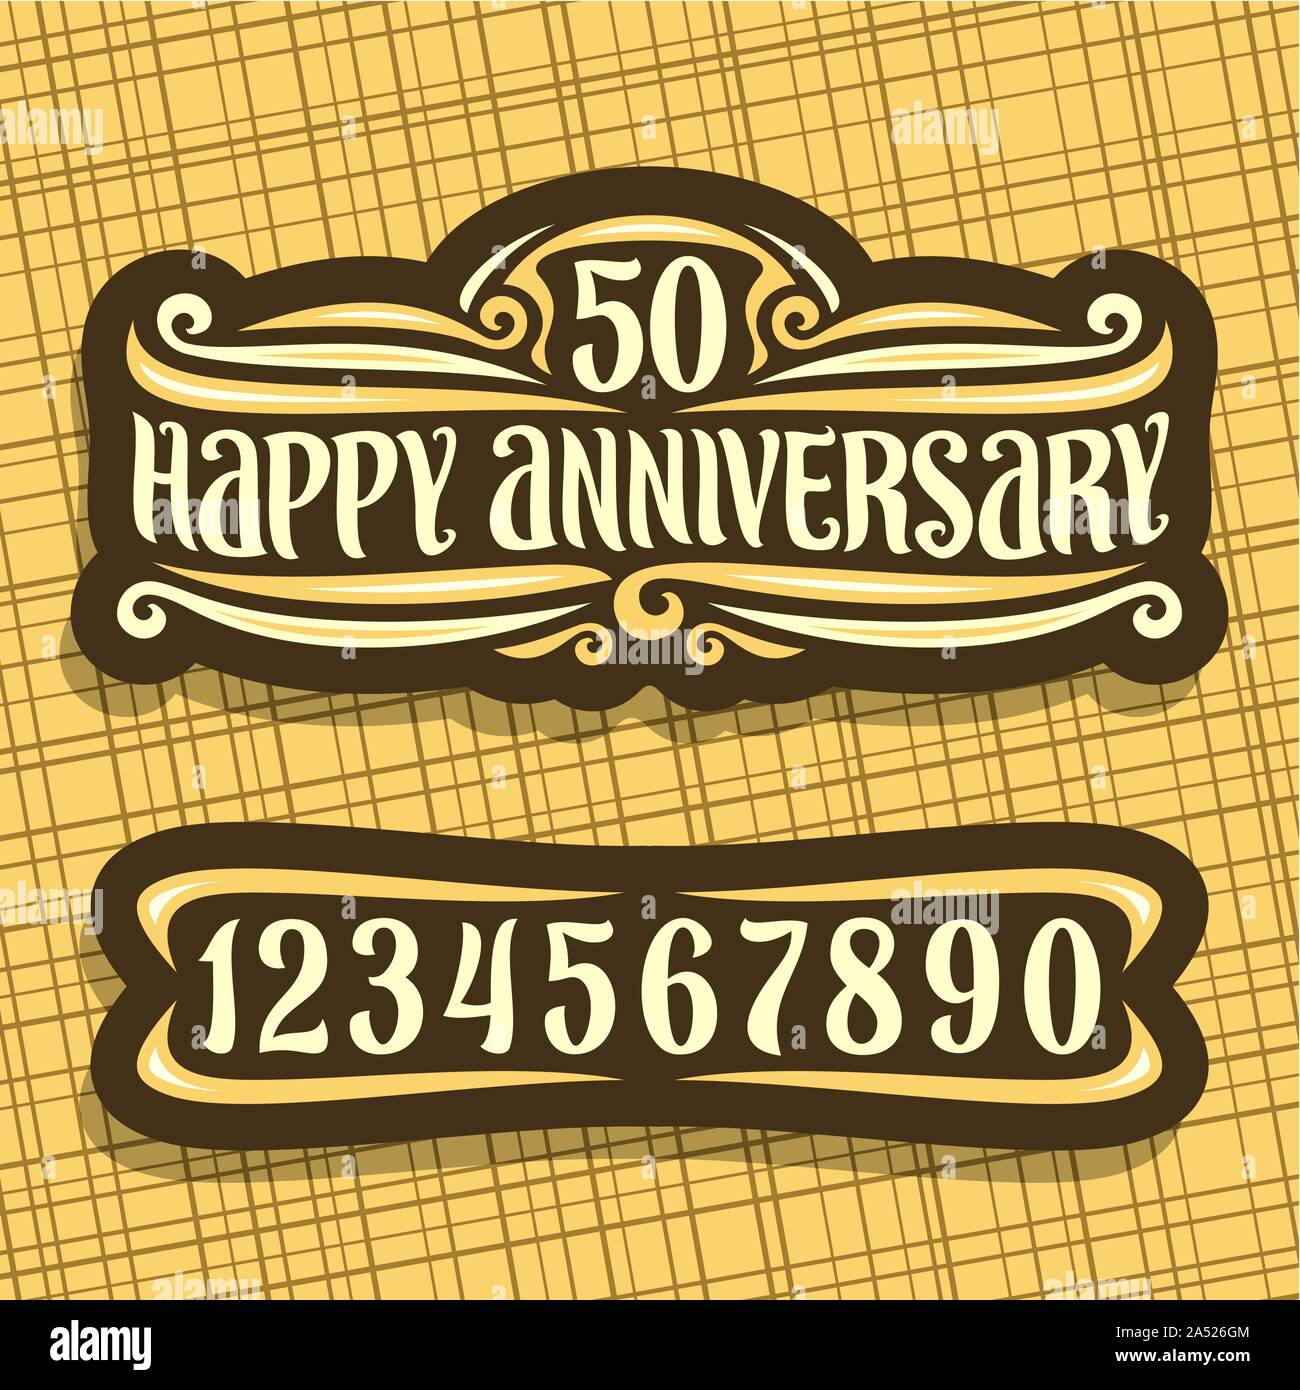 Logo Vector pour anniversaire, Dark vintage signe avec le numéro 50 et le texte pour célébrer ce jour, pinceau original de caractères mots heureux anniversaire, Illustration de Vecteur